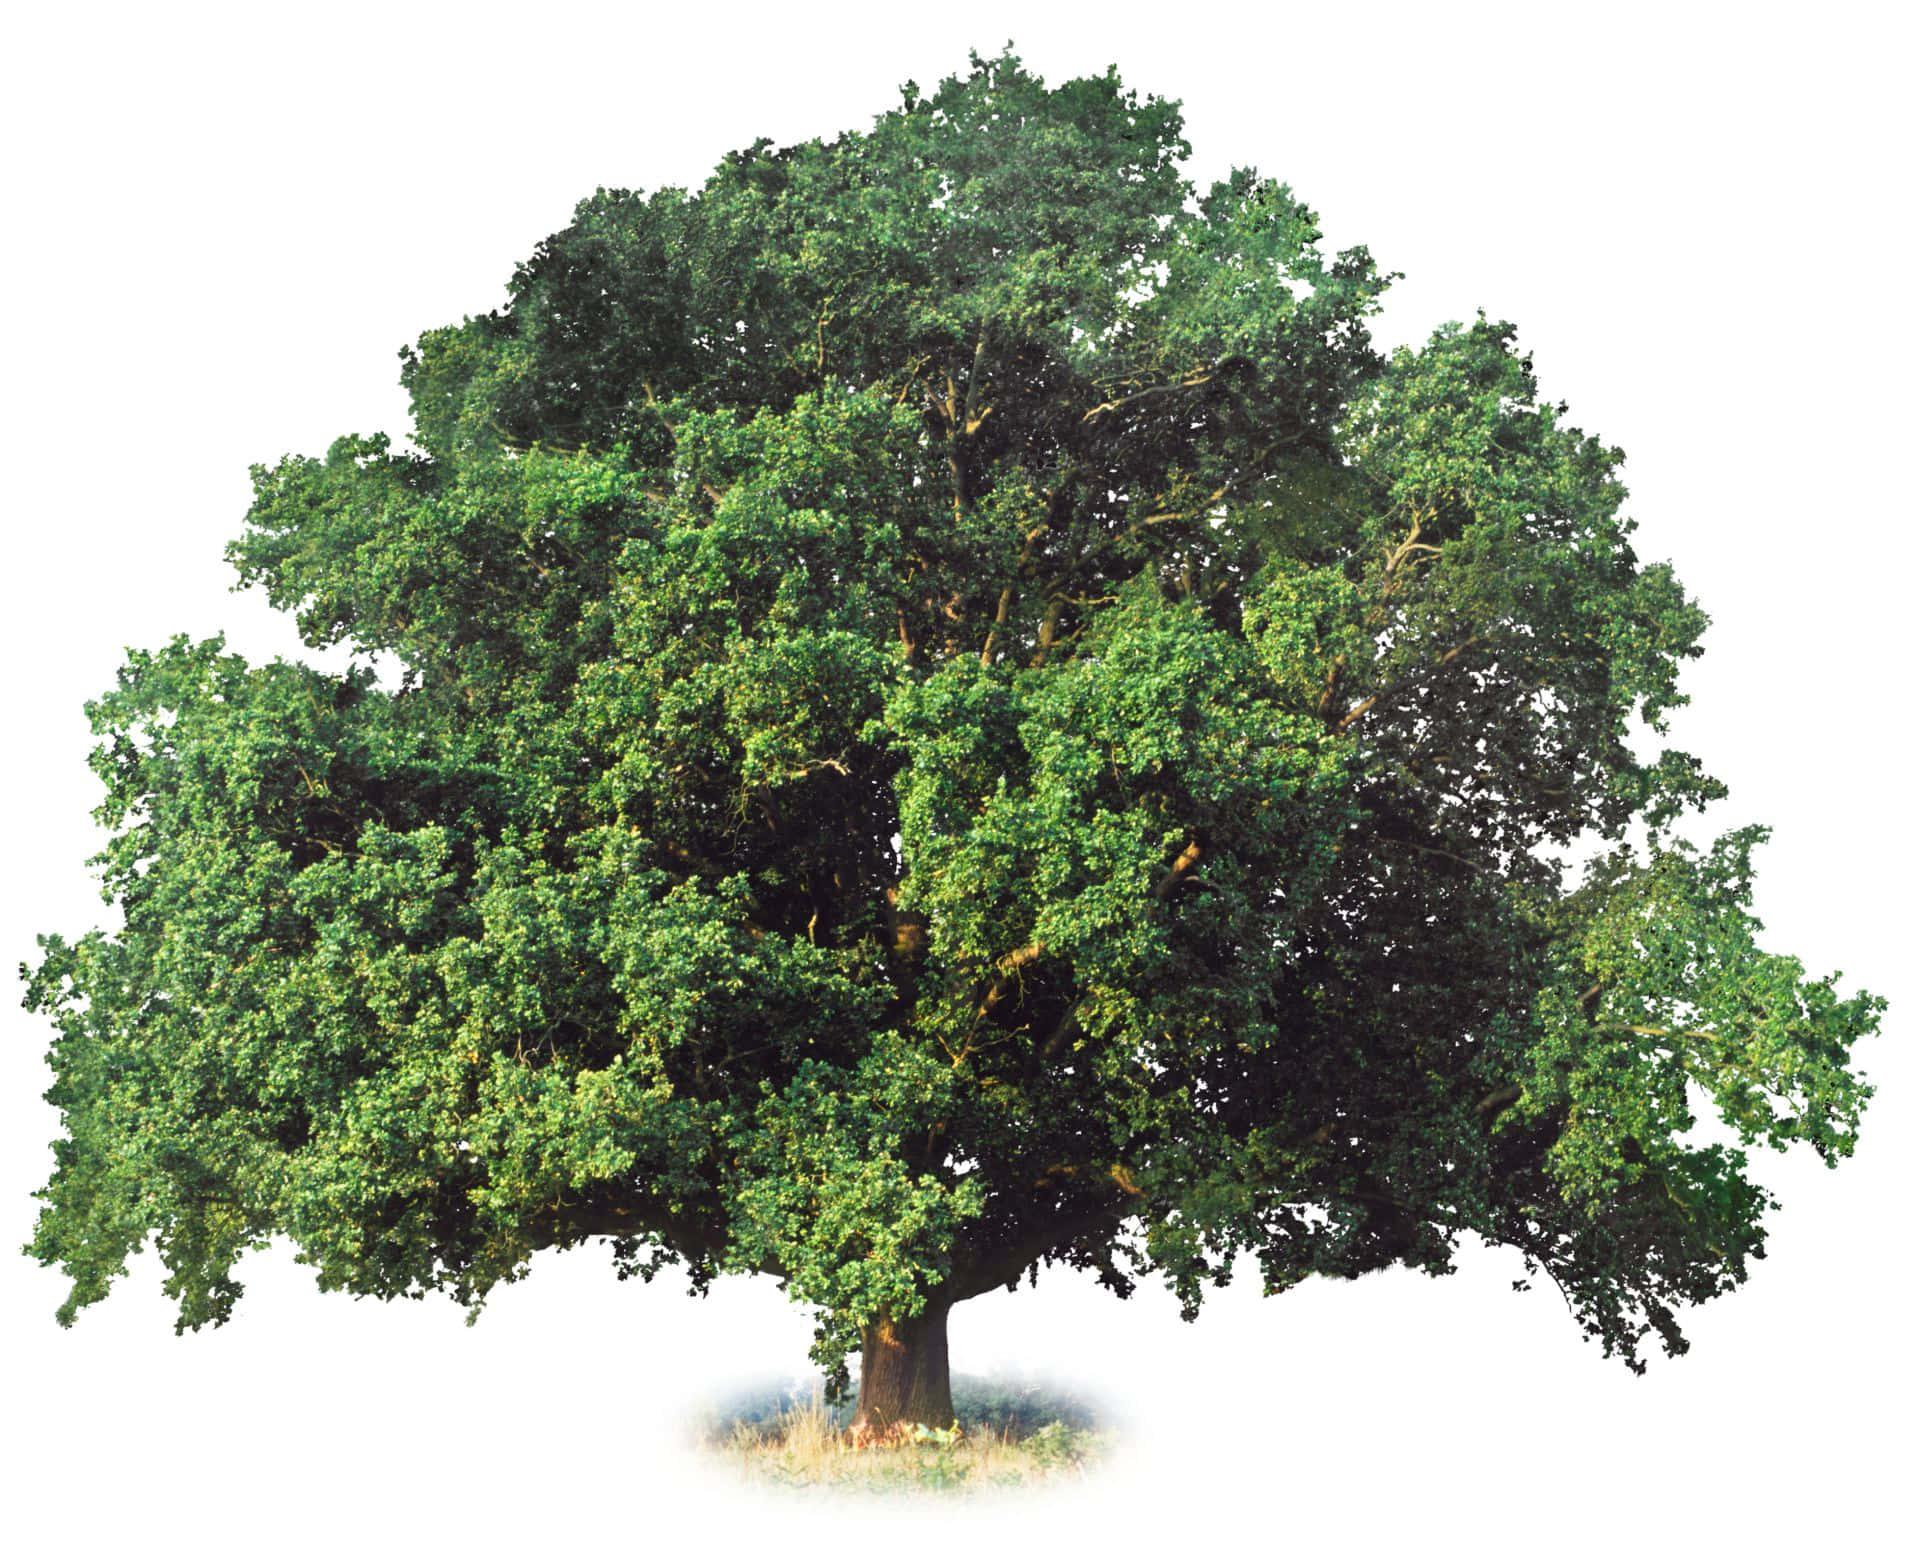 Naturensskönhet: En Imponerande Träd I Morgonljuset.